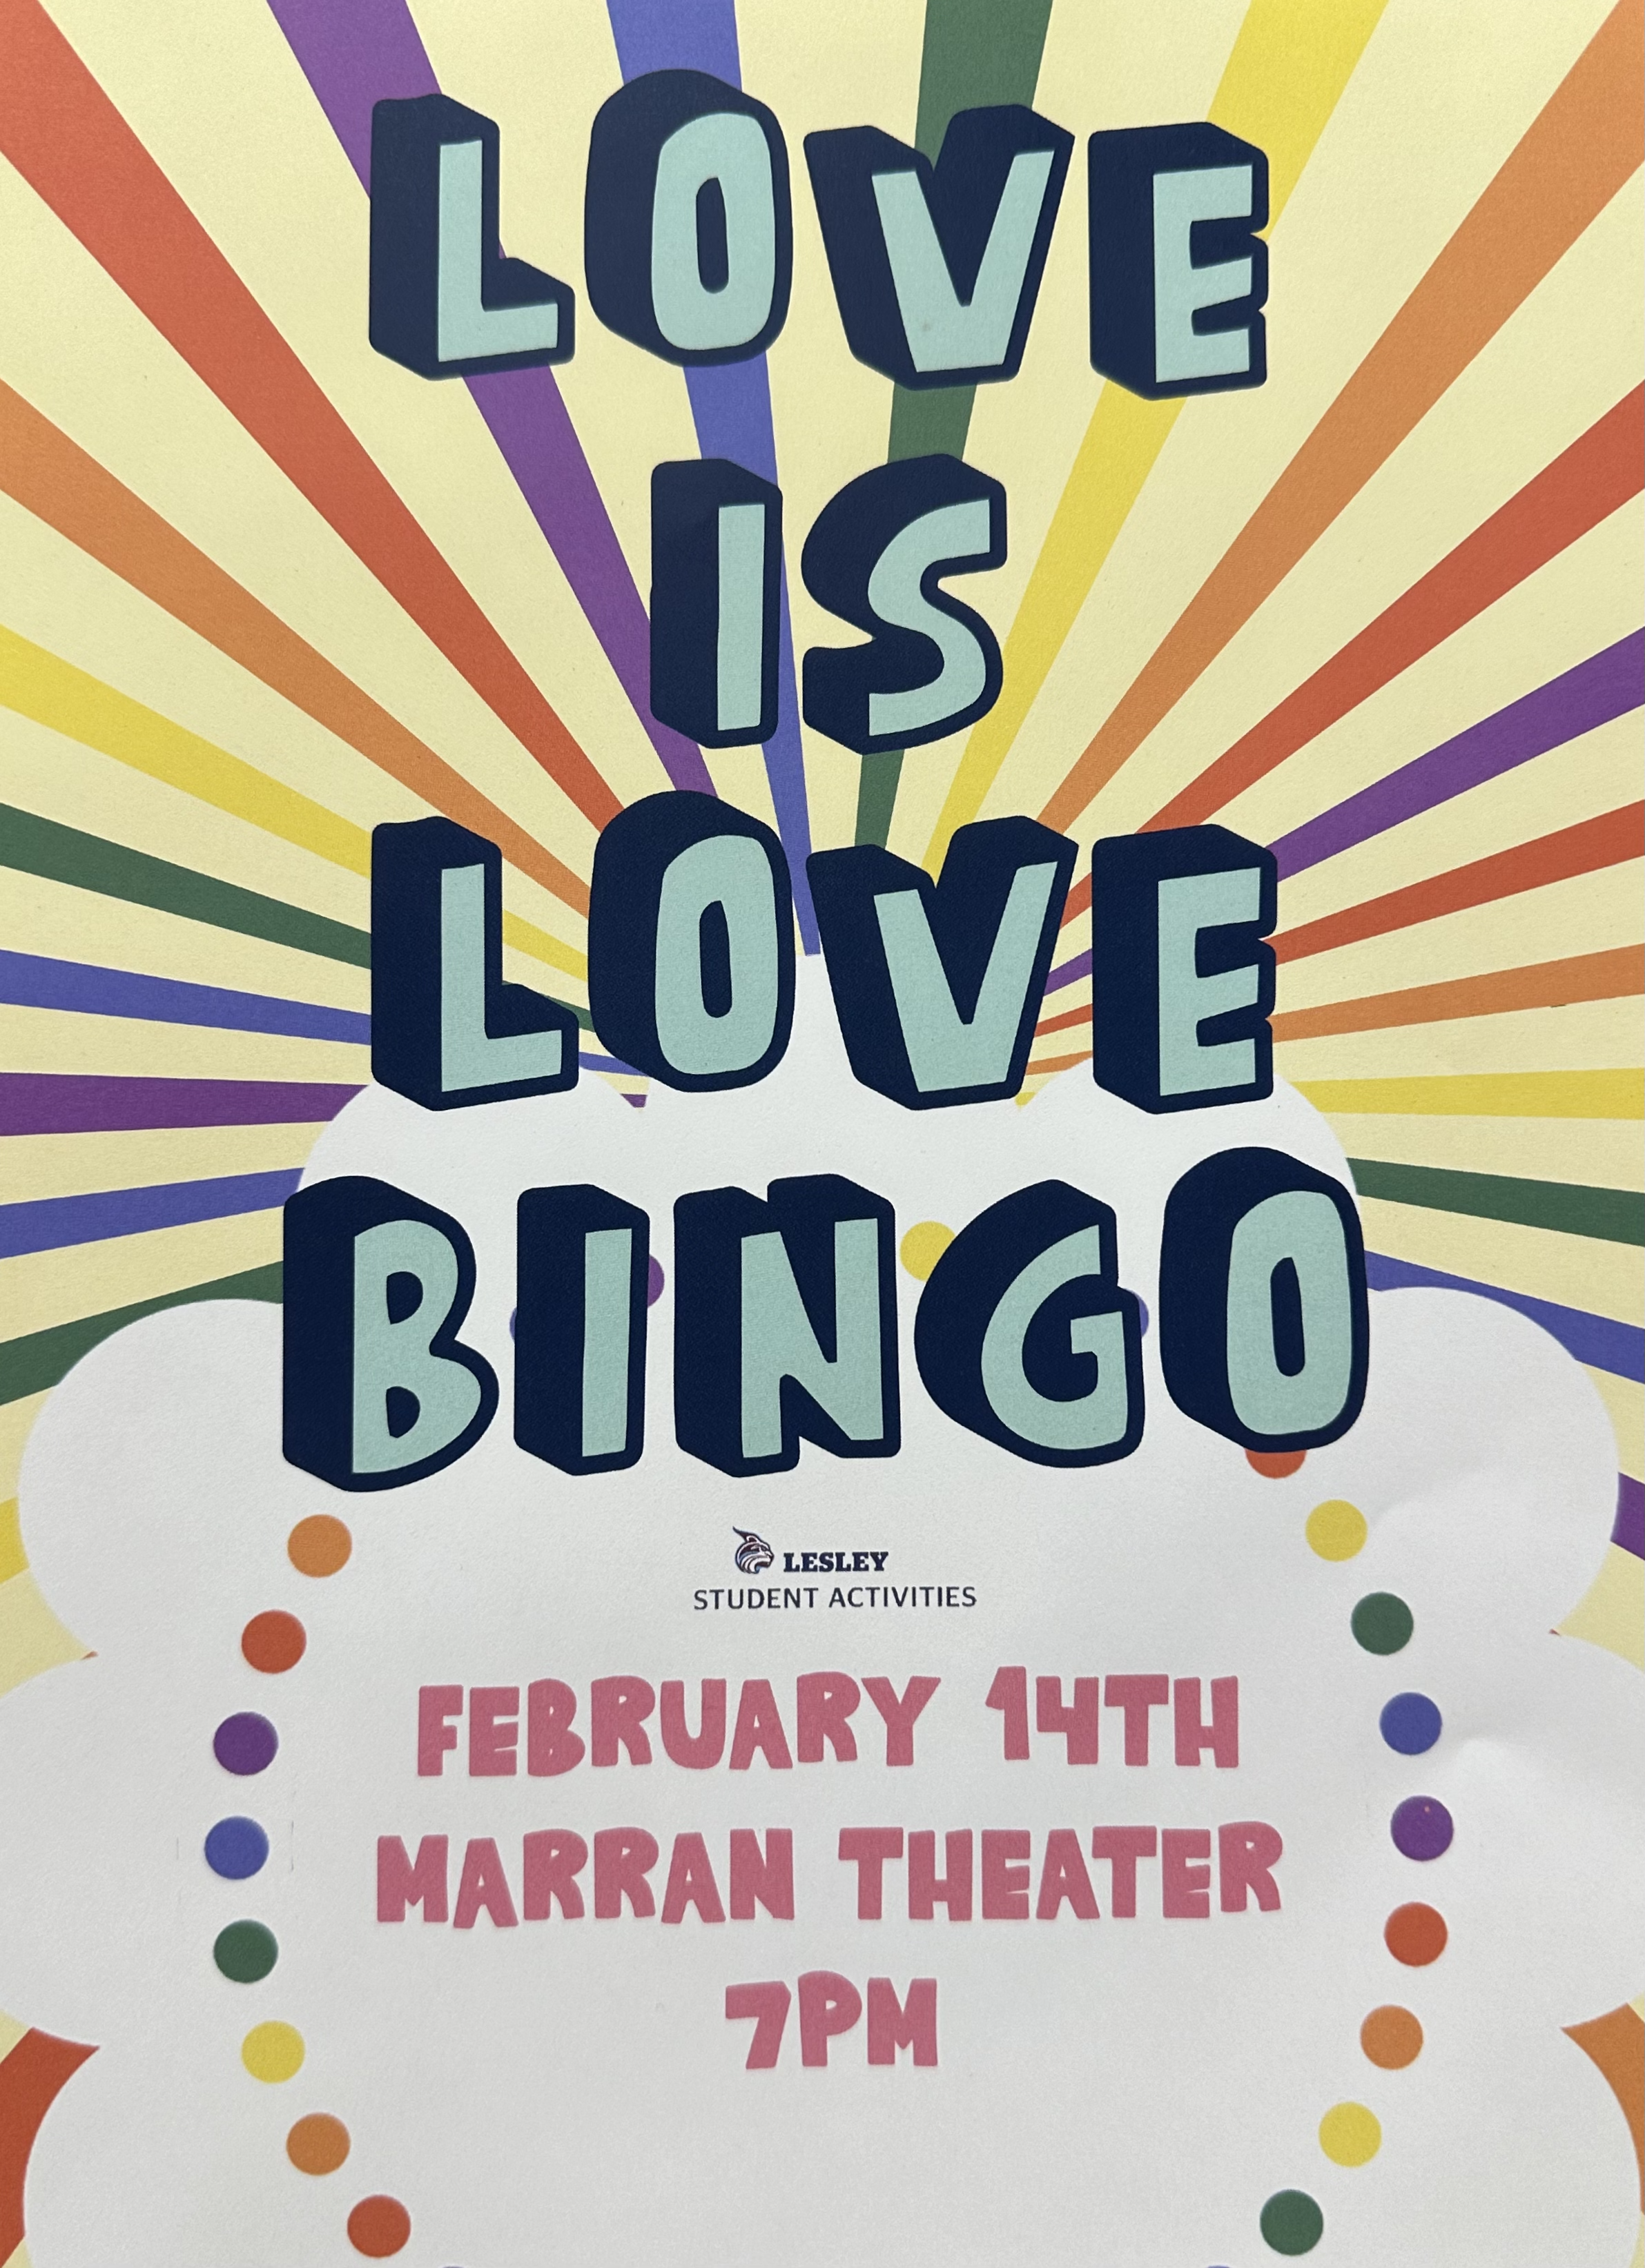 Love is love bingo poster